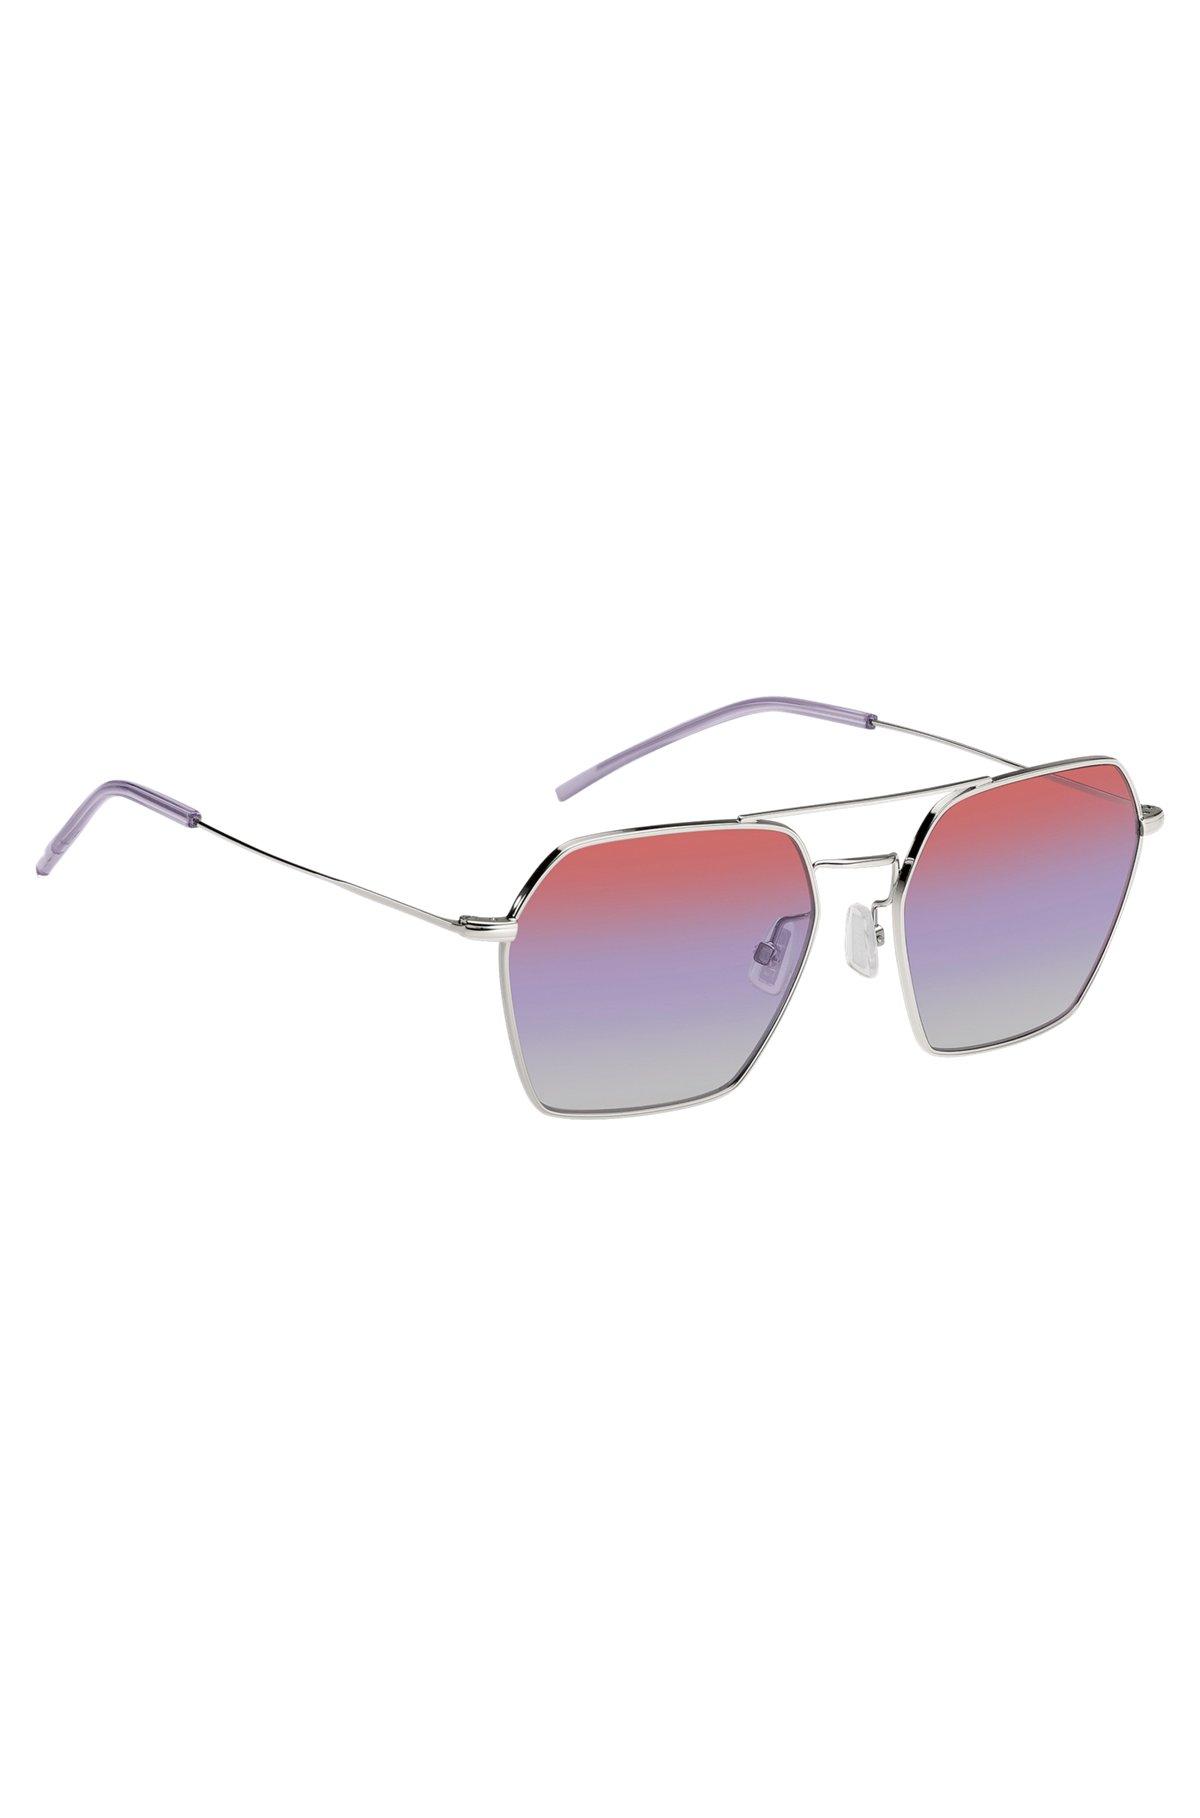 Sonnenbrille mit Doppelsteg und mehrfarbigen Gläsern, Silber